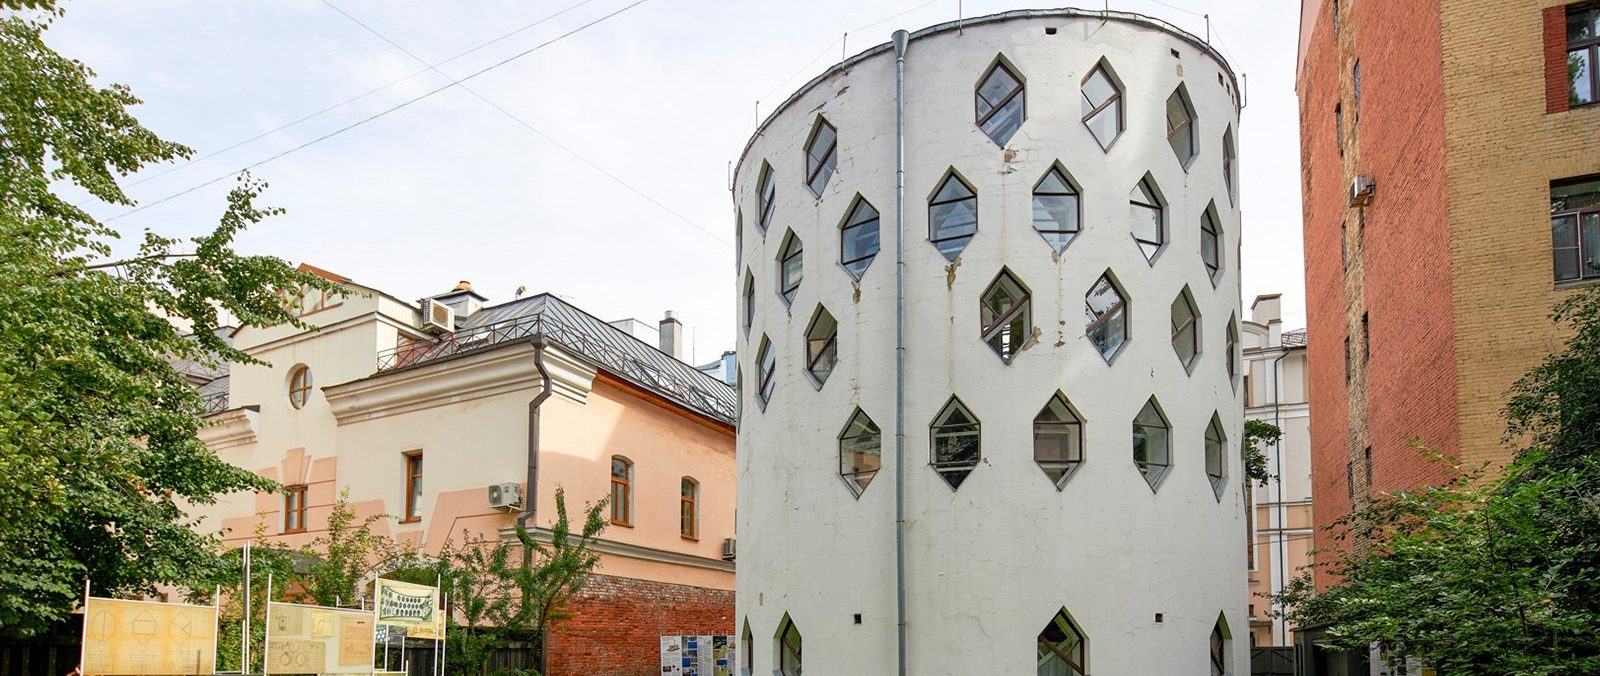 Фасад здания Дома Мельникова не изменят во время реставрации. Фото: сайт мэра Москвы